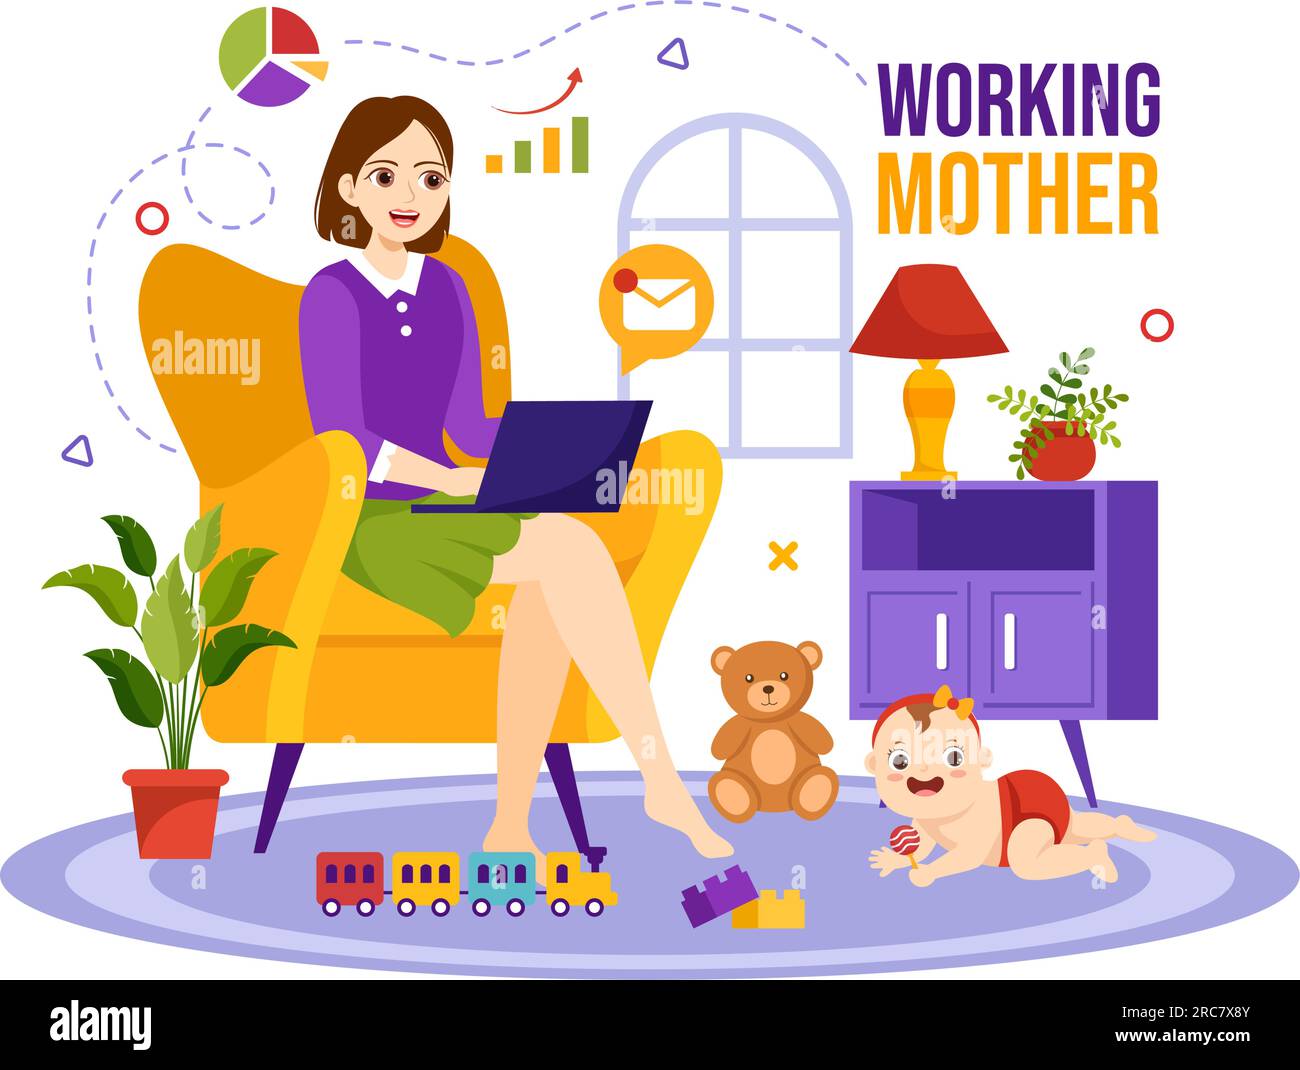 Working Mother Vector Illustration mit Müttern, die arbeiten und sich zu Hause um ihre Kinder kümmern, in Multitasking Cartoon Hand Drawn Templates Stock Vektor